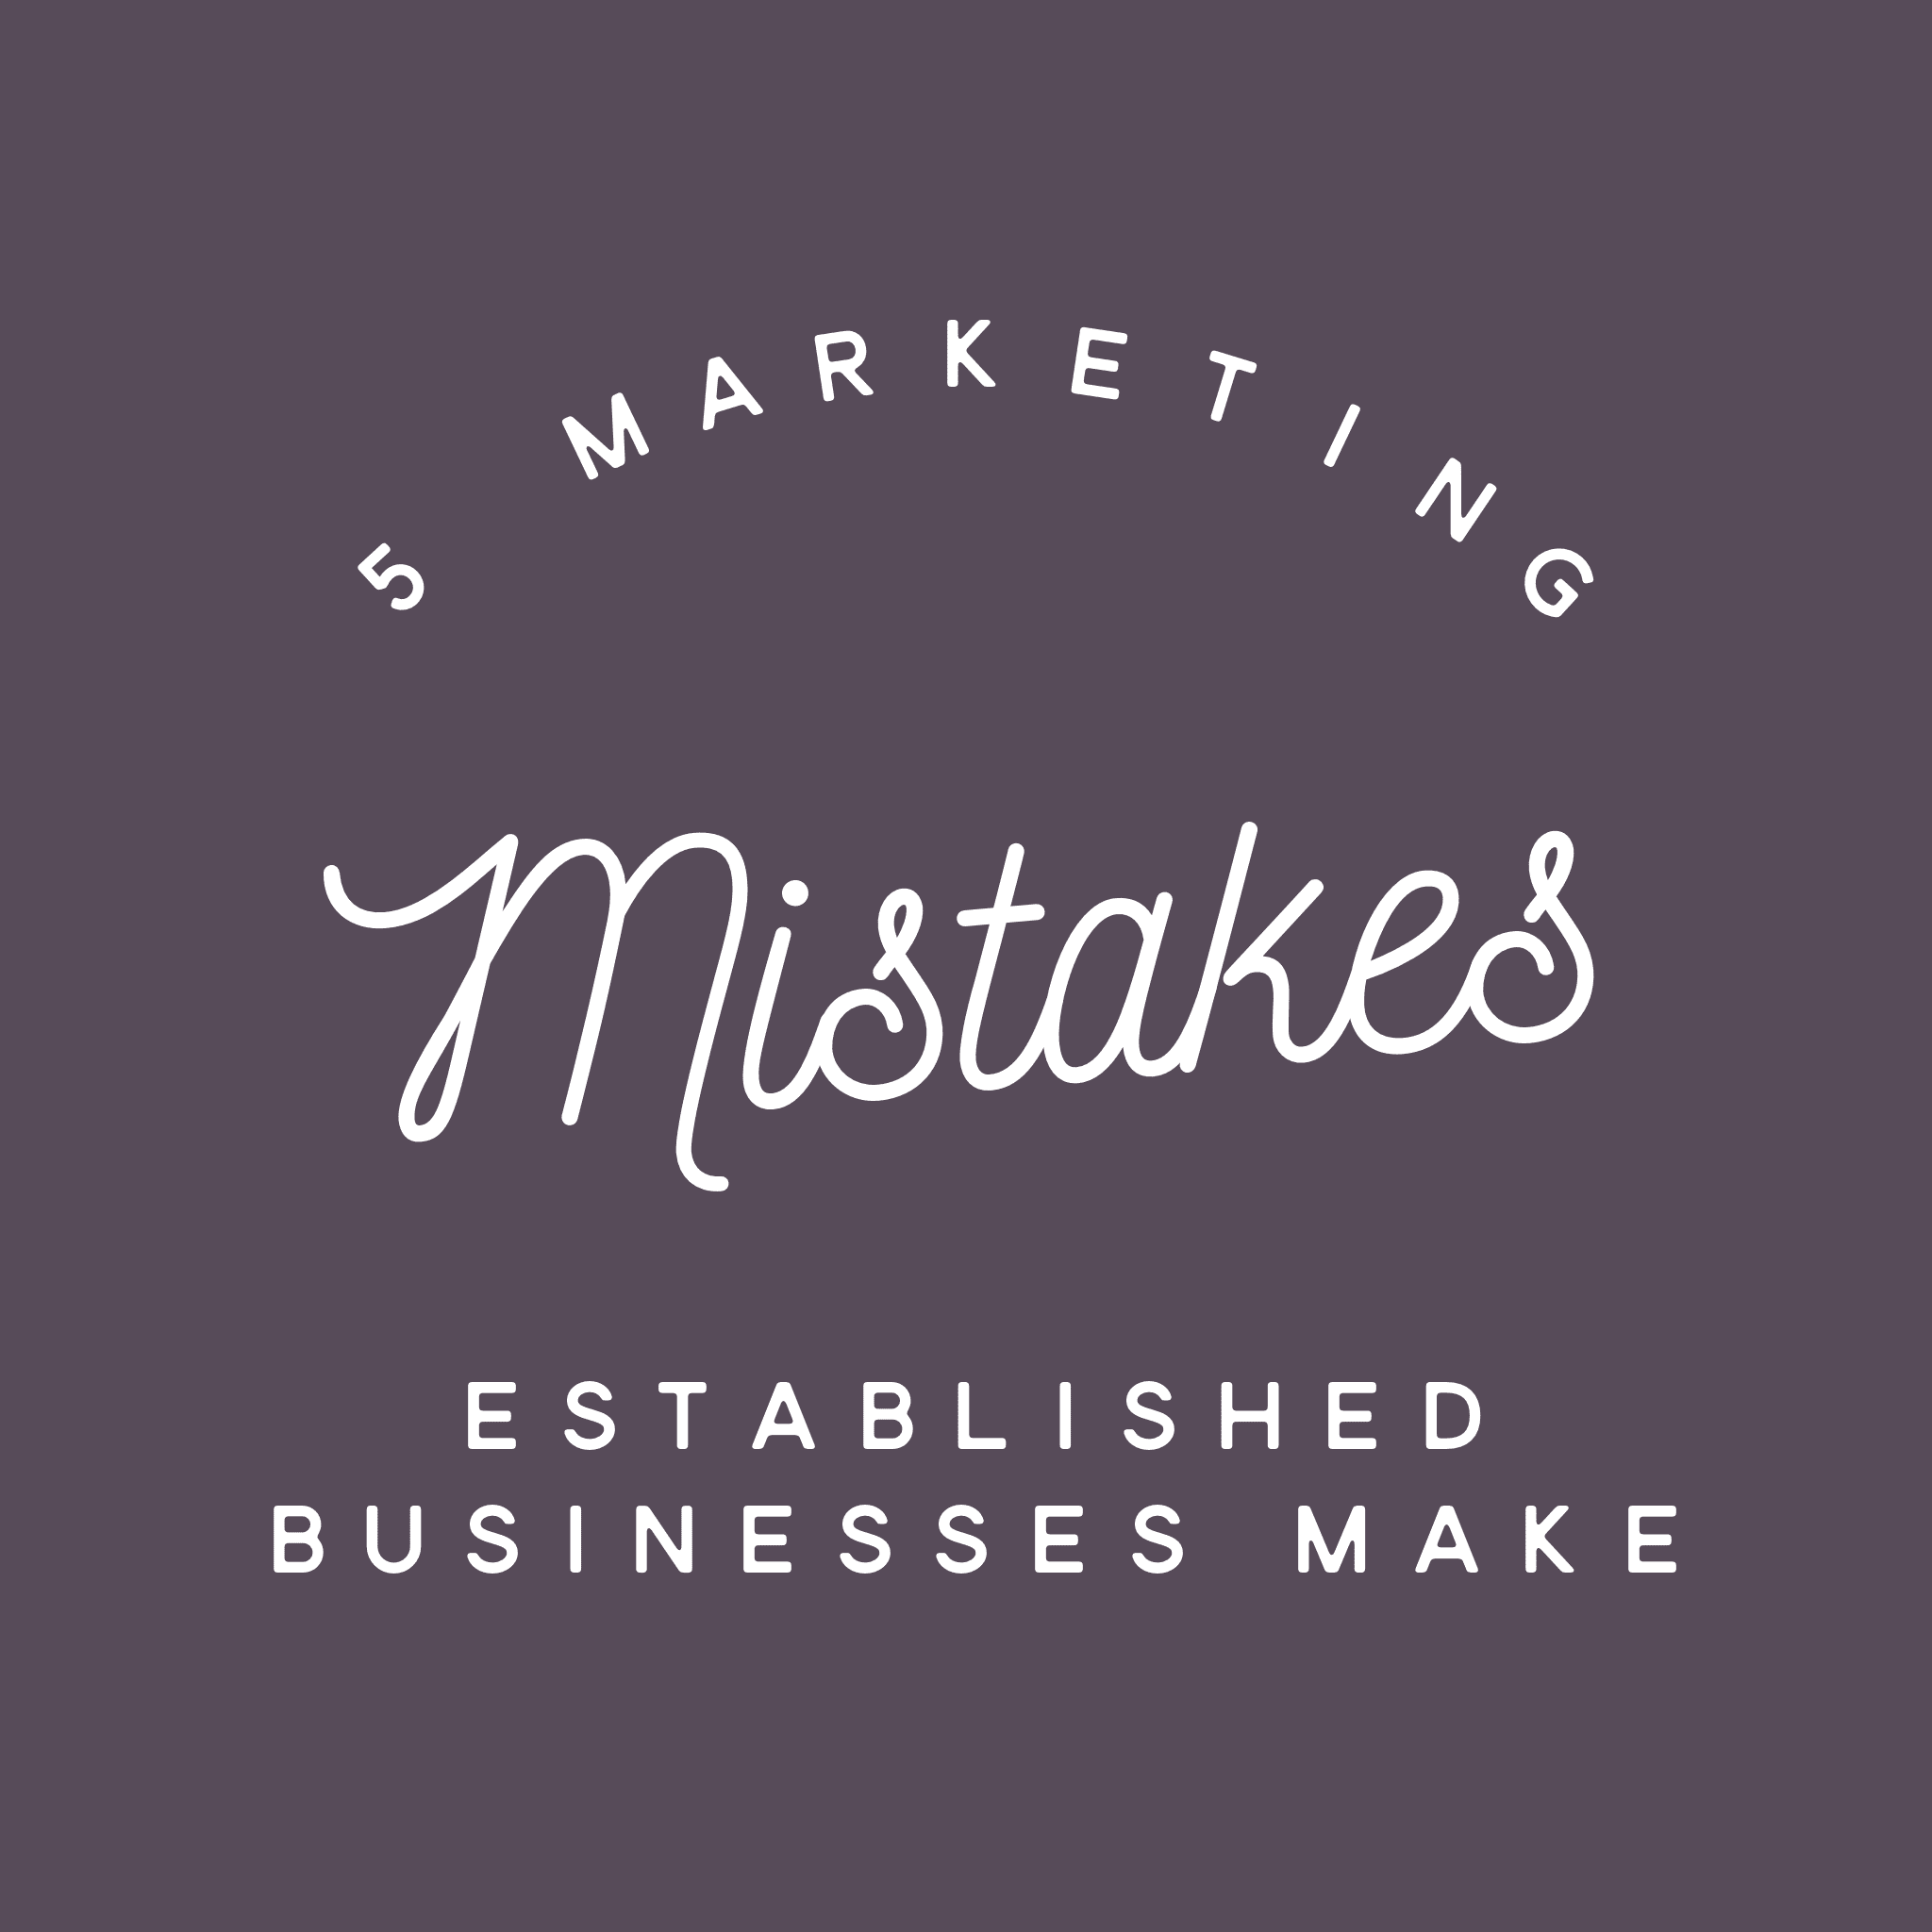 5 Marketing Mistakes Established Businesses Make